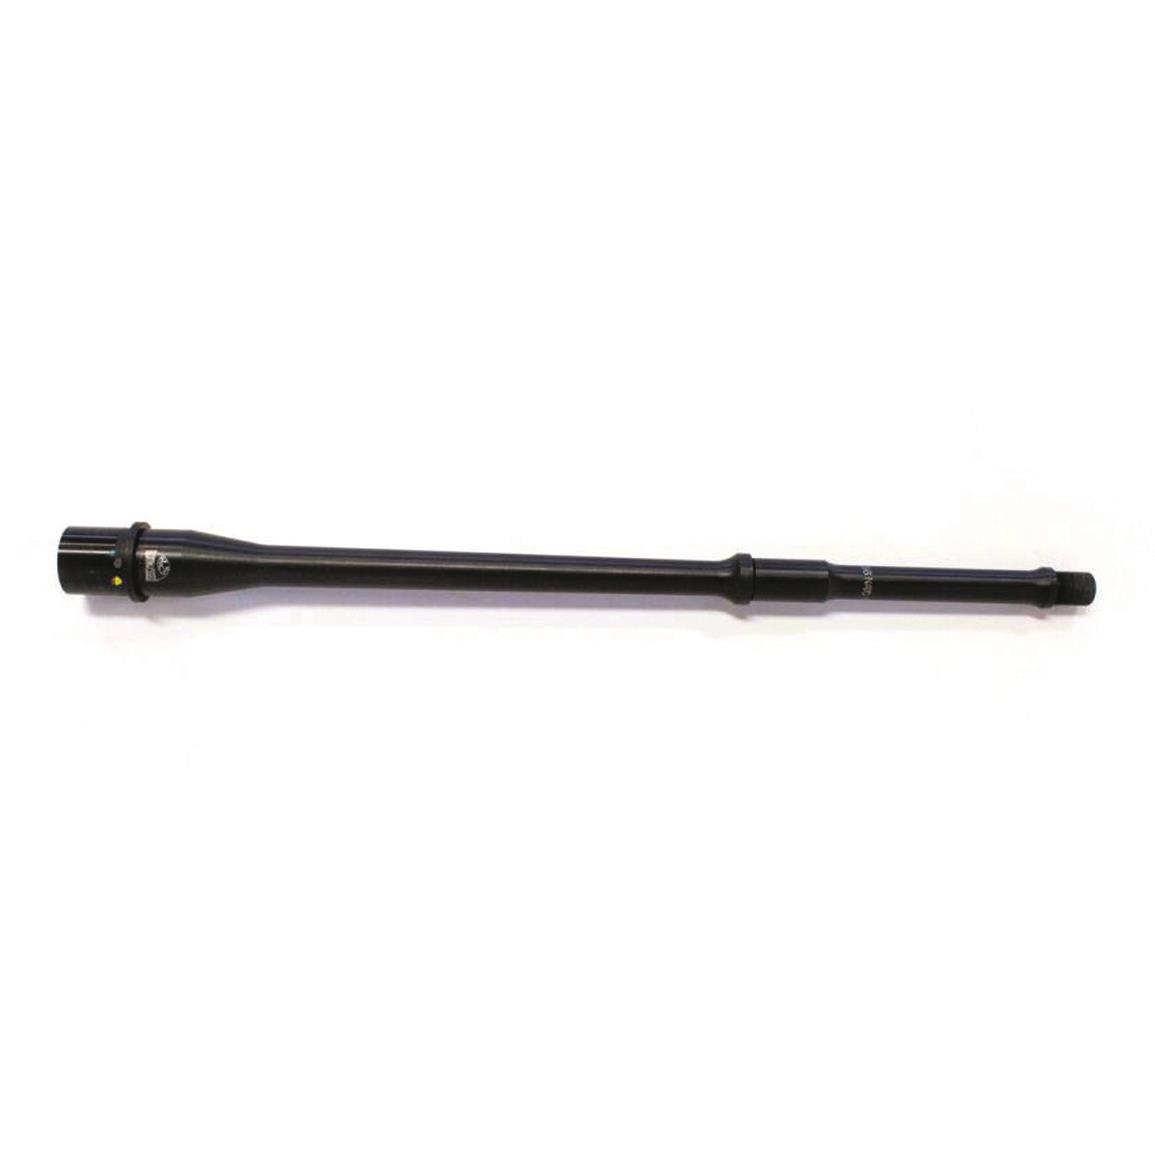 Faxon 14.5" Pencil-profile AR-15 Barrel, 5.56 NATO/.223 Remington, Nitrided